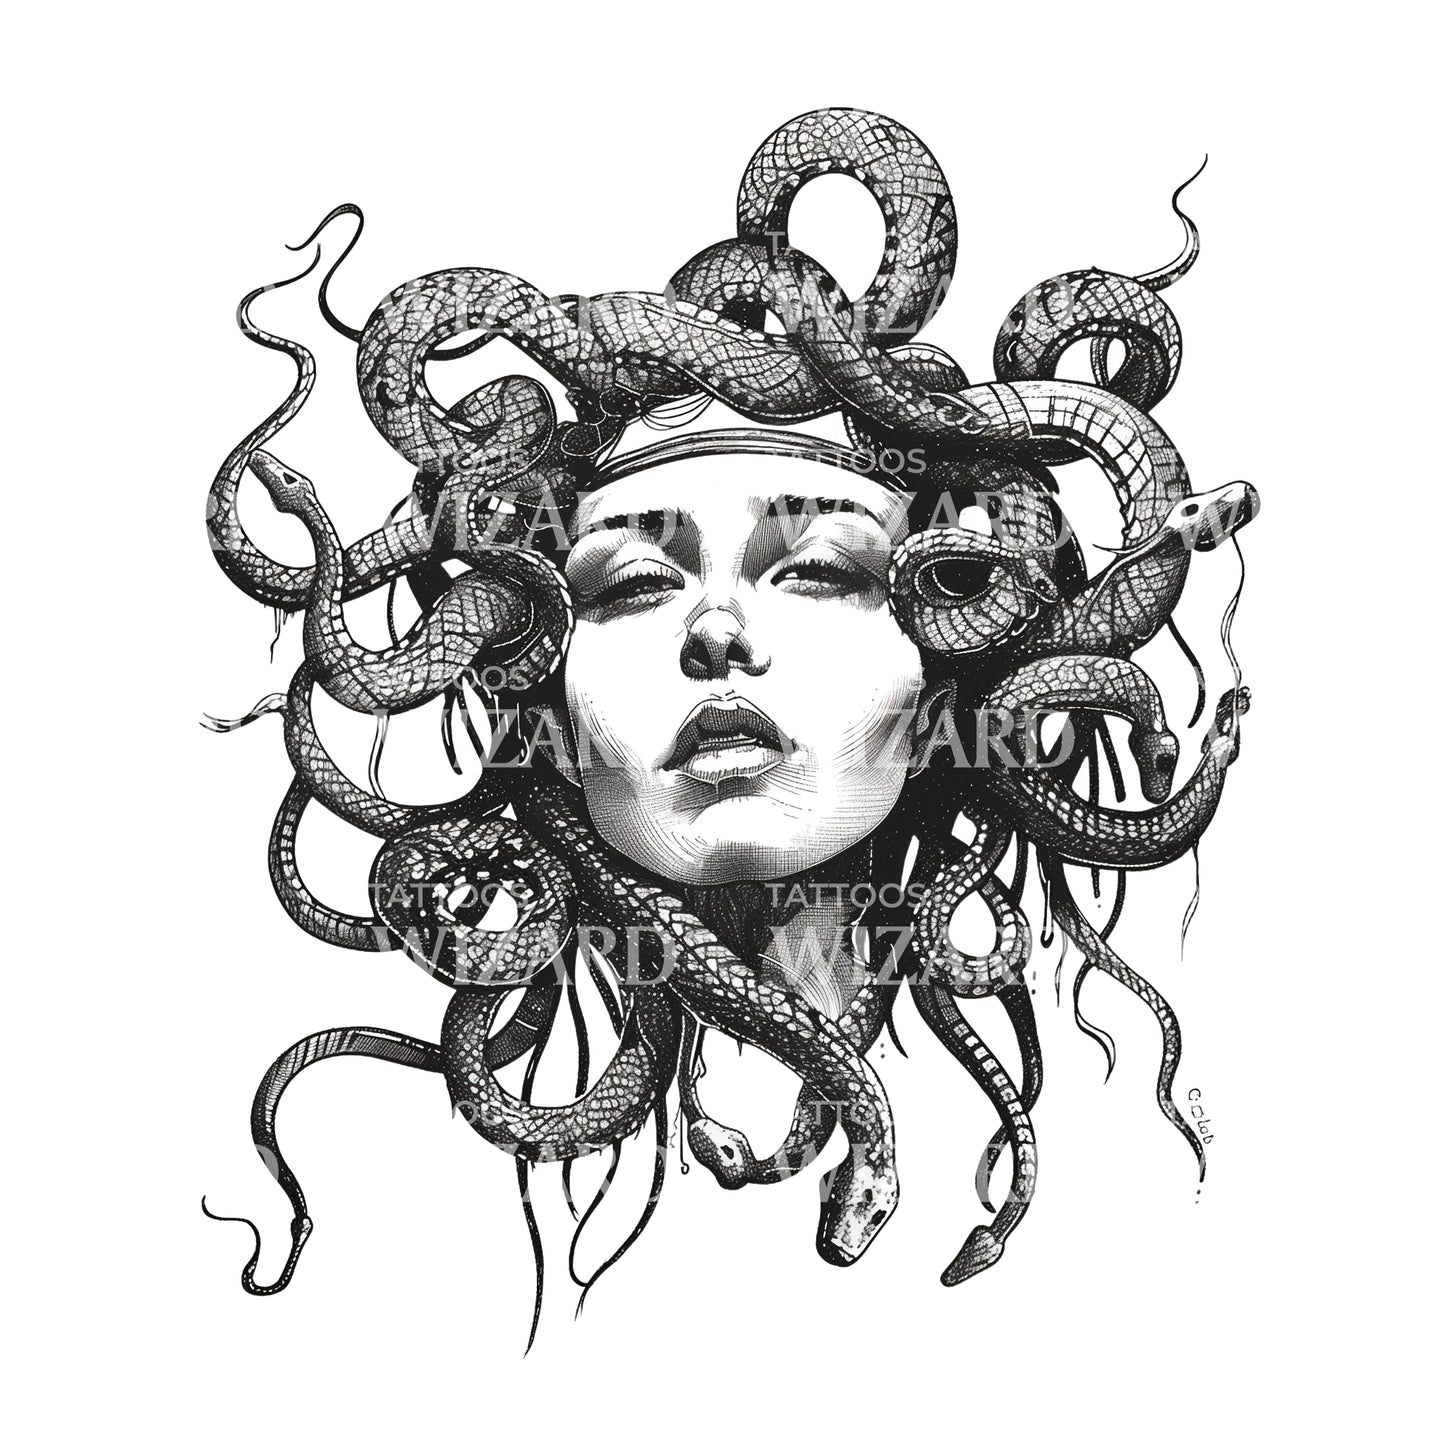 Eine hypnotisierende, verführerische Medusa-Tattoo-Idee